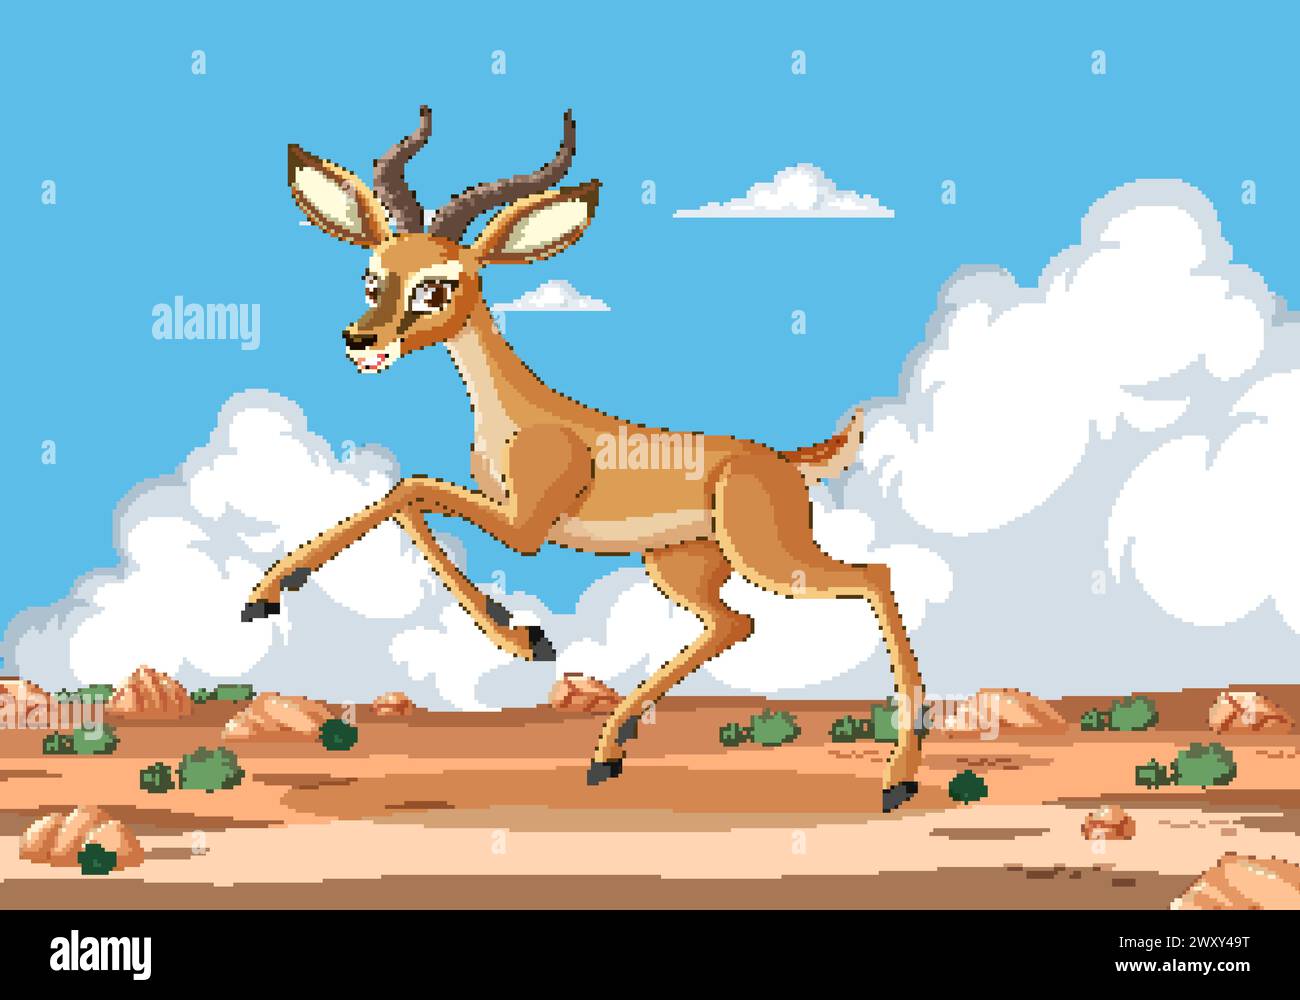 Animated gazelle running in a desert landscape. Stock Vector